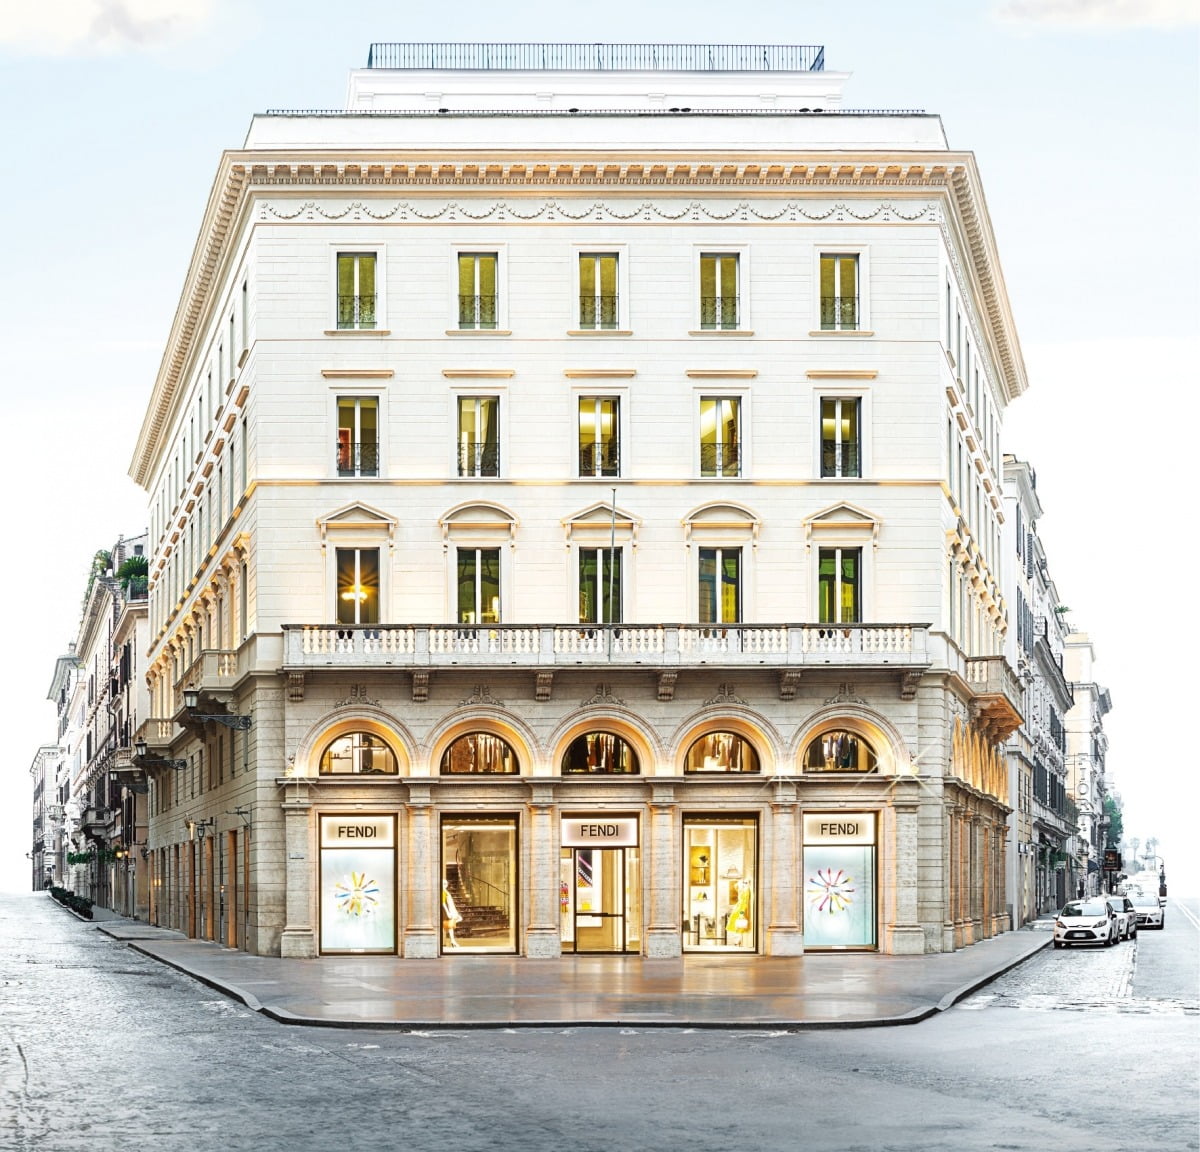 로마 팔라초 거리에 있는 펜디 본사 건물. 3층에 펜디 호텔이 있다. 